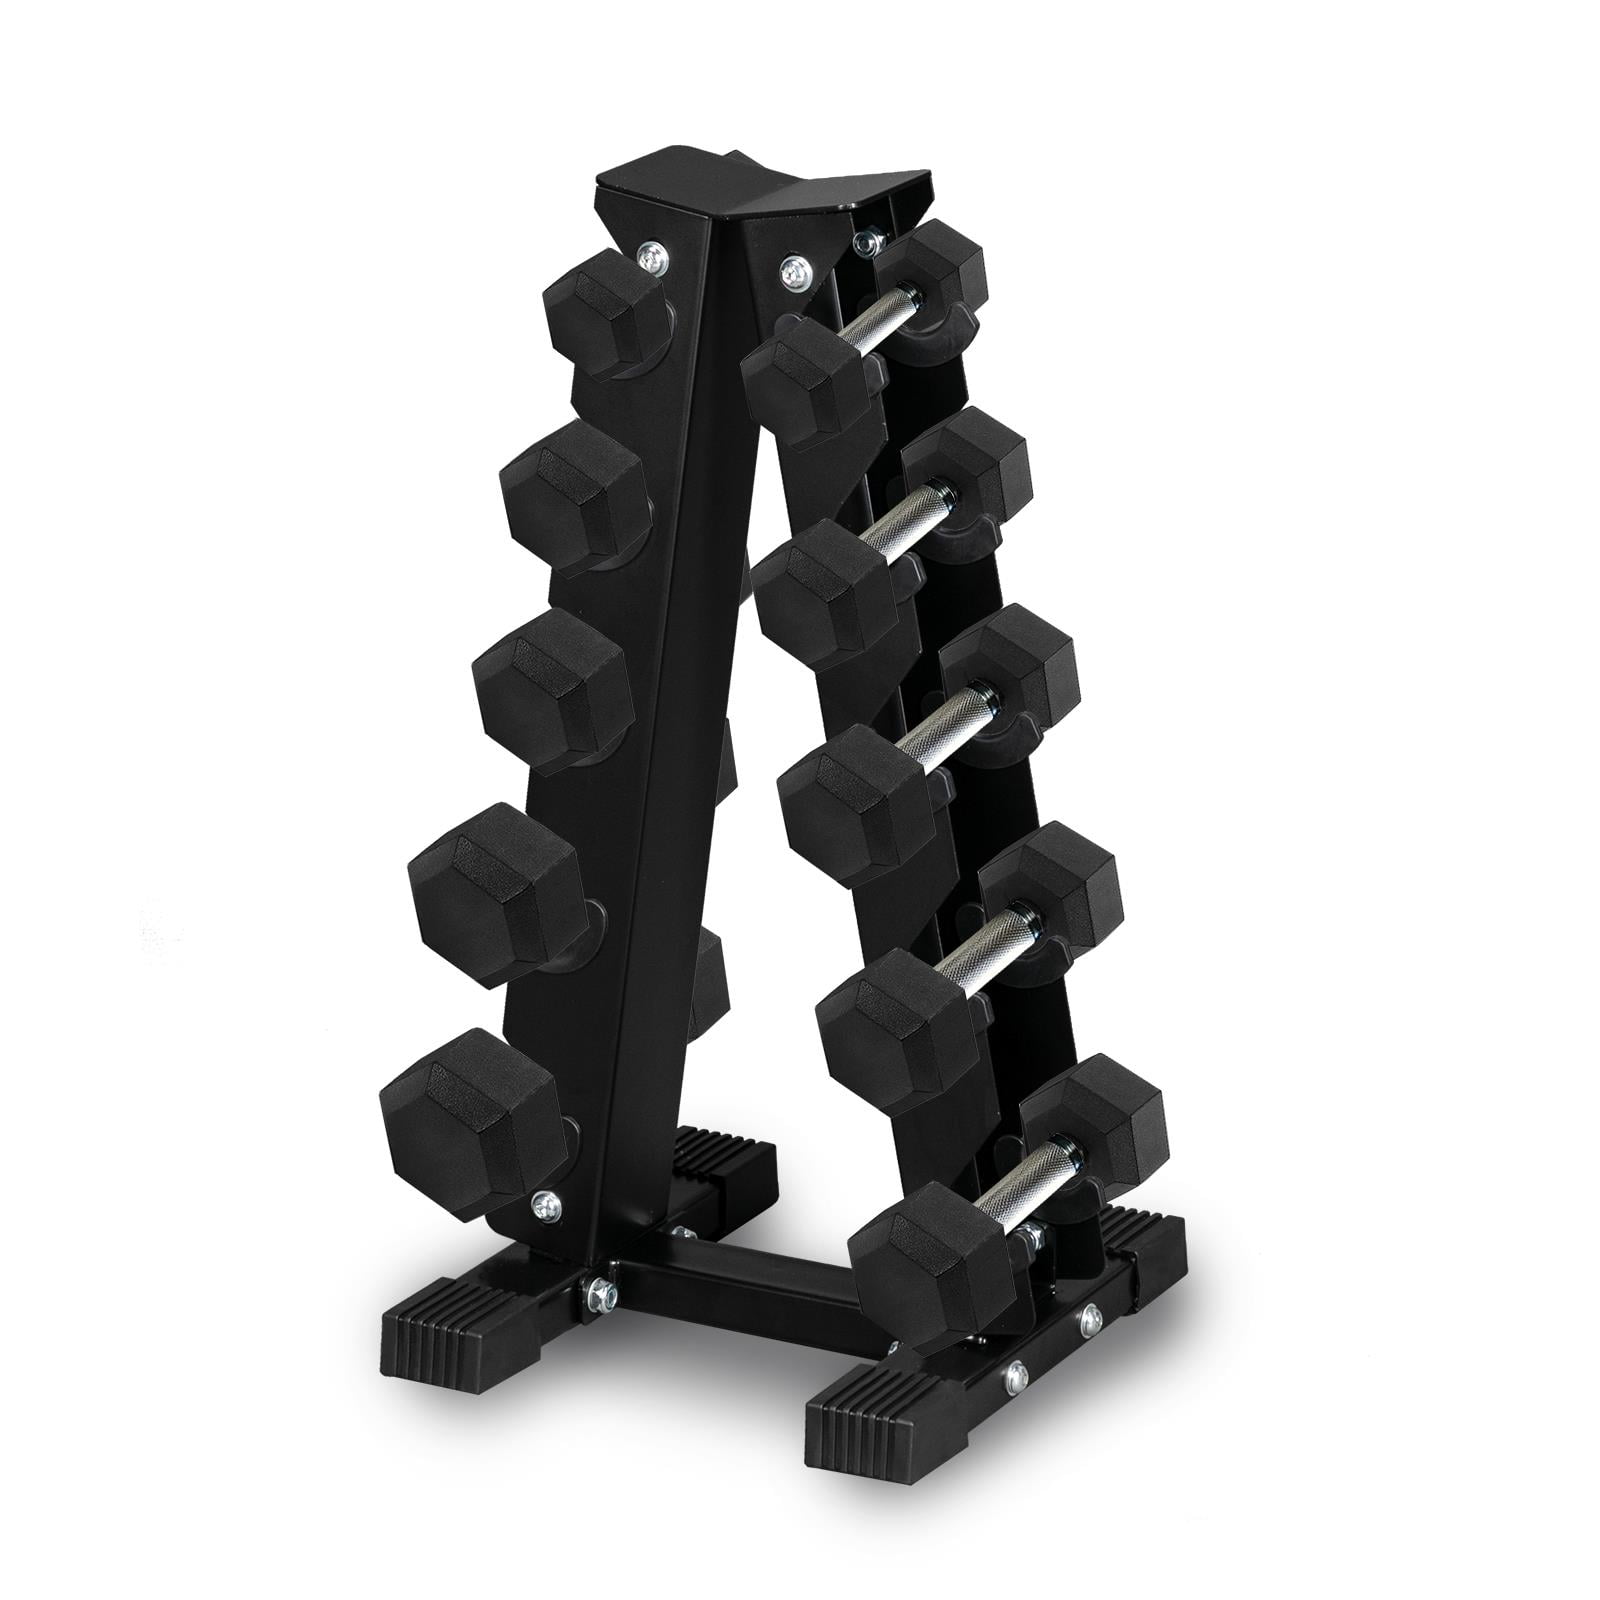 5 Tier Dumbbell Rack Stand, Weight Rack Dumbbell Storage Rack,Tree Dumbbell Rack for Home Fitness Training 